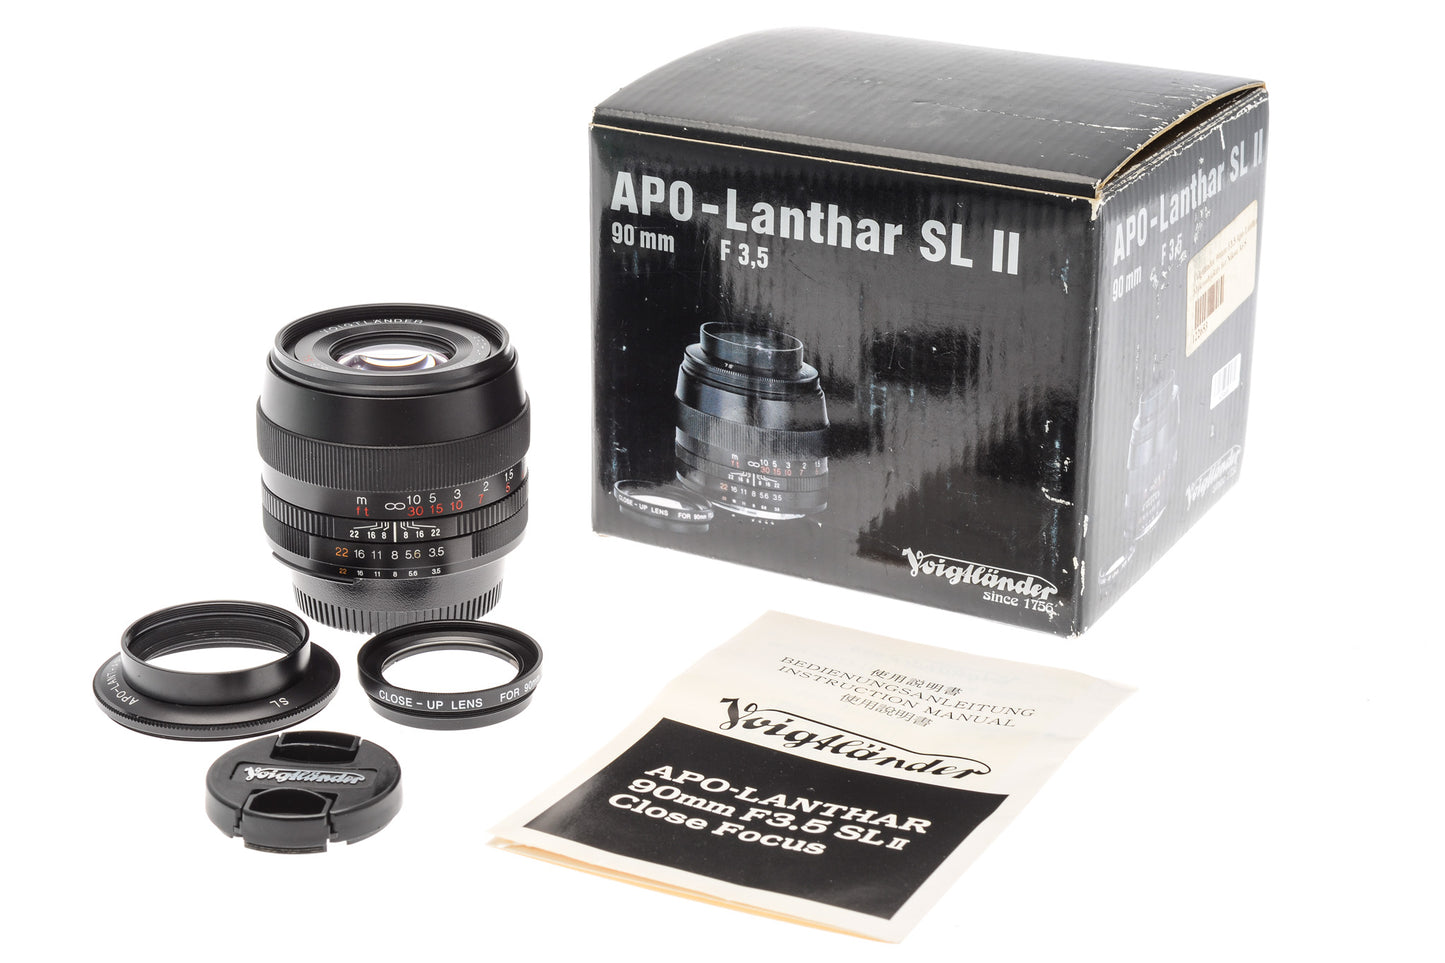 Voigtländer 90mm f3.5 Apo-Lanthar SL II - Lens